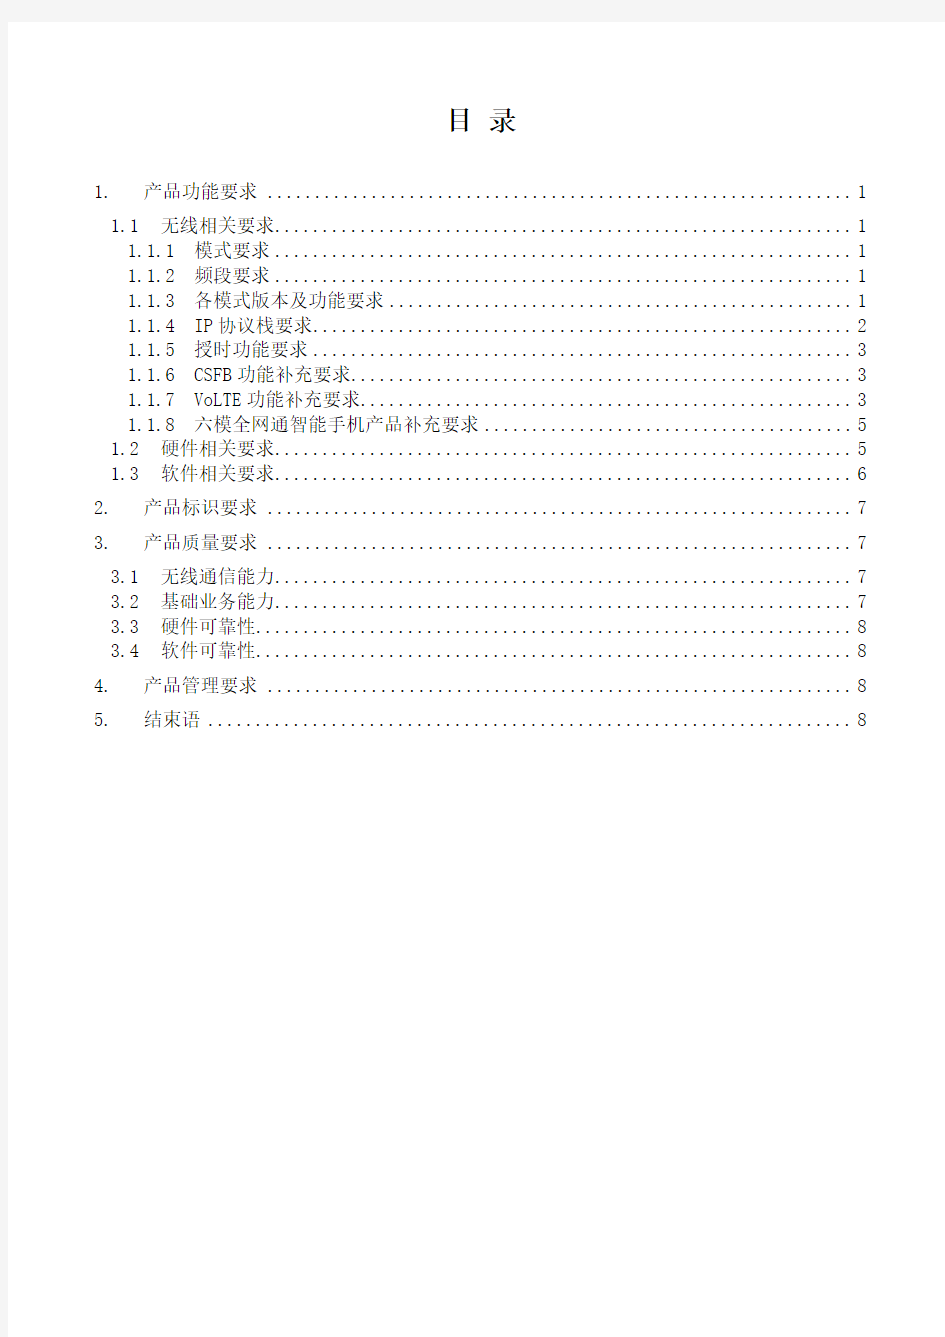 中国移动4G非定制手机产品白皮书(2015年12月)